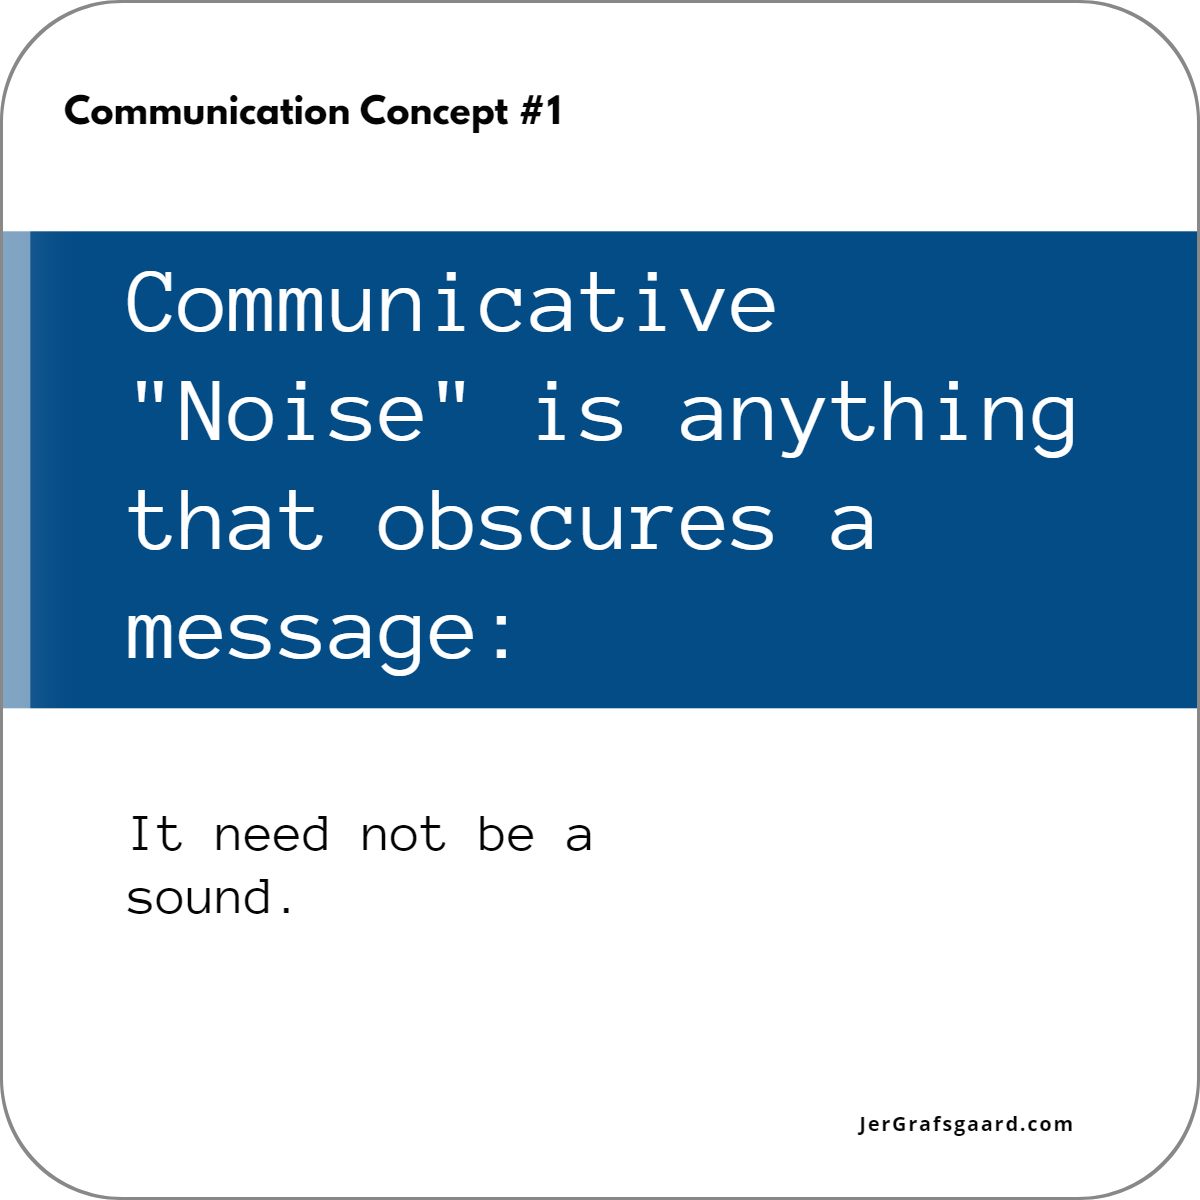 Communication Concept #1